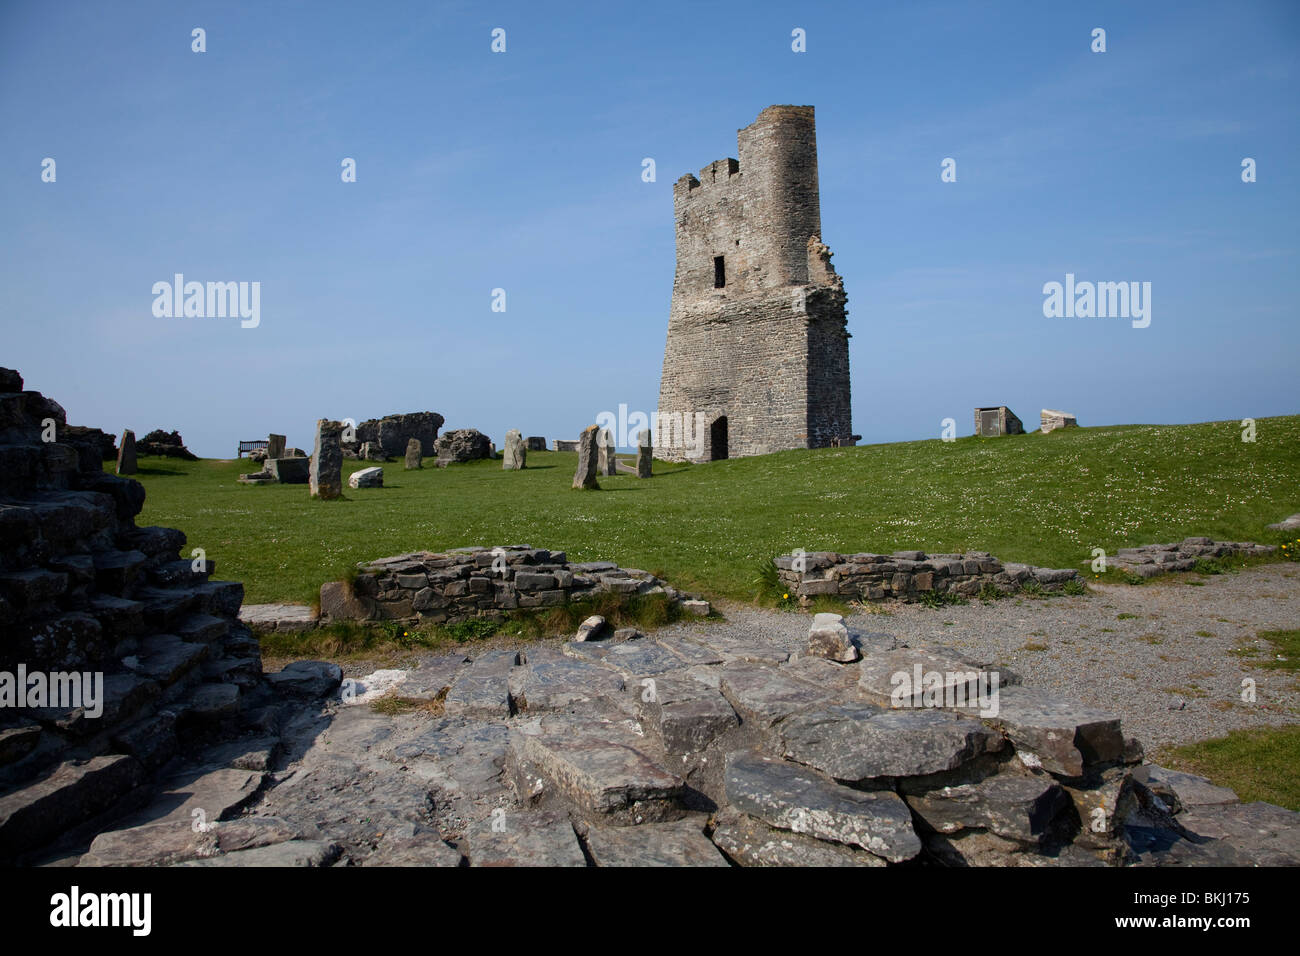 Ruines du château de gallois sur la mer pointe à Aberystwyth station de vacances Pays de Galles sur une chaude journée de printemps Banque D'Images